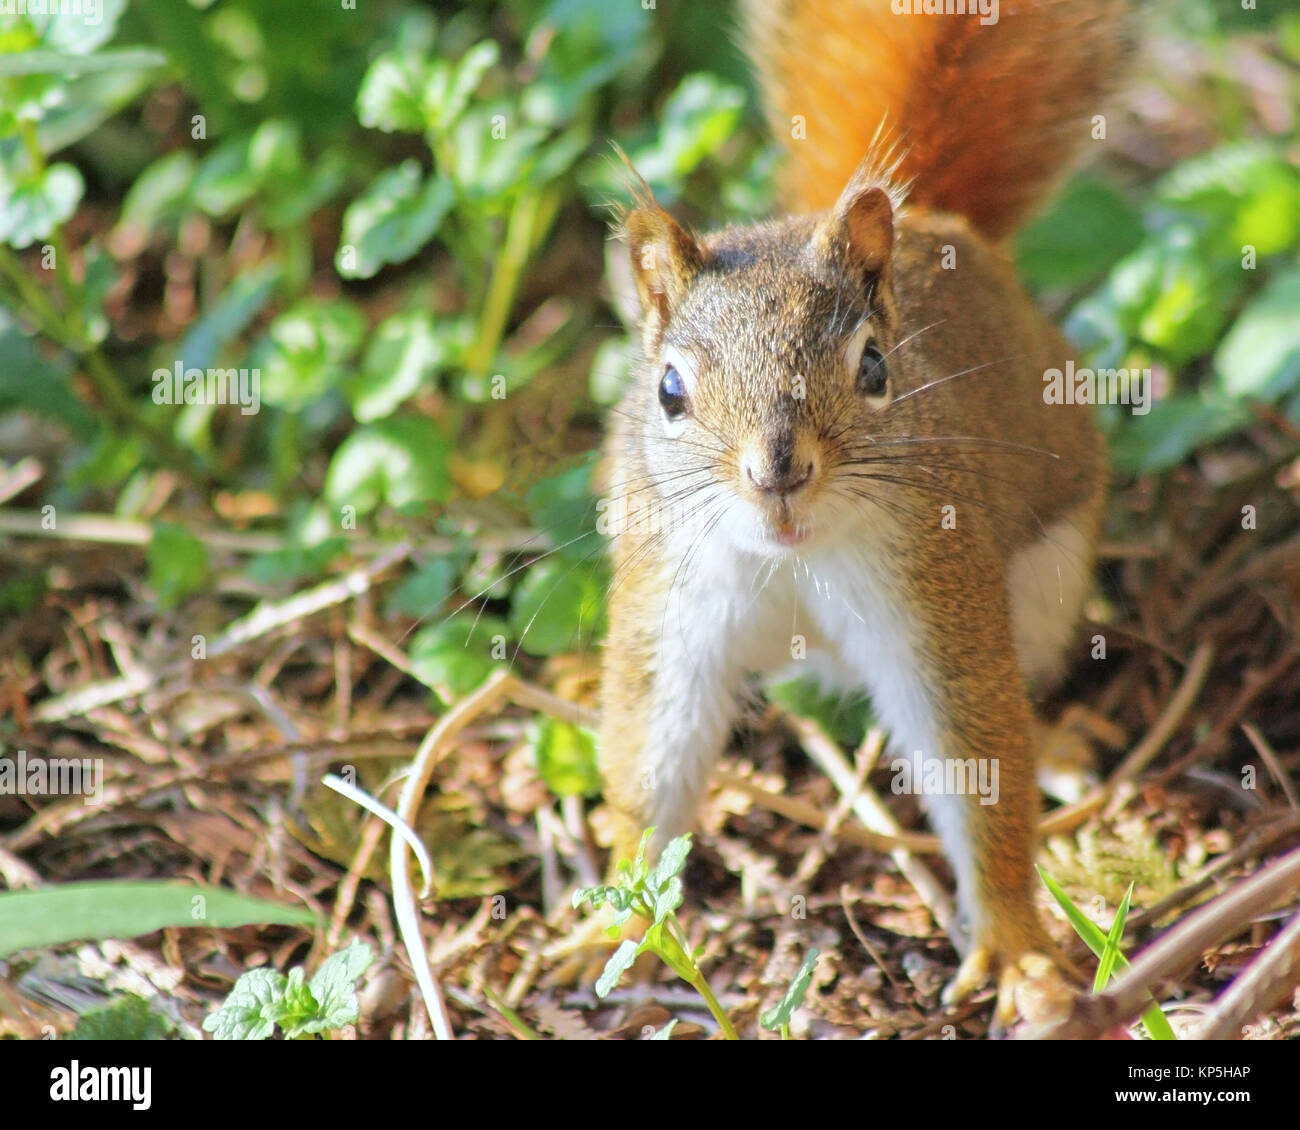 Eine winzige rote Eichhörnchen hat unvorbereitet erwischt worden. Erschrocken Er friert immer noch und sieht an Kamera Stockfoto